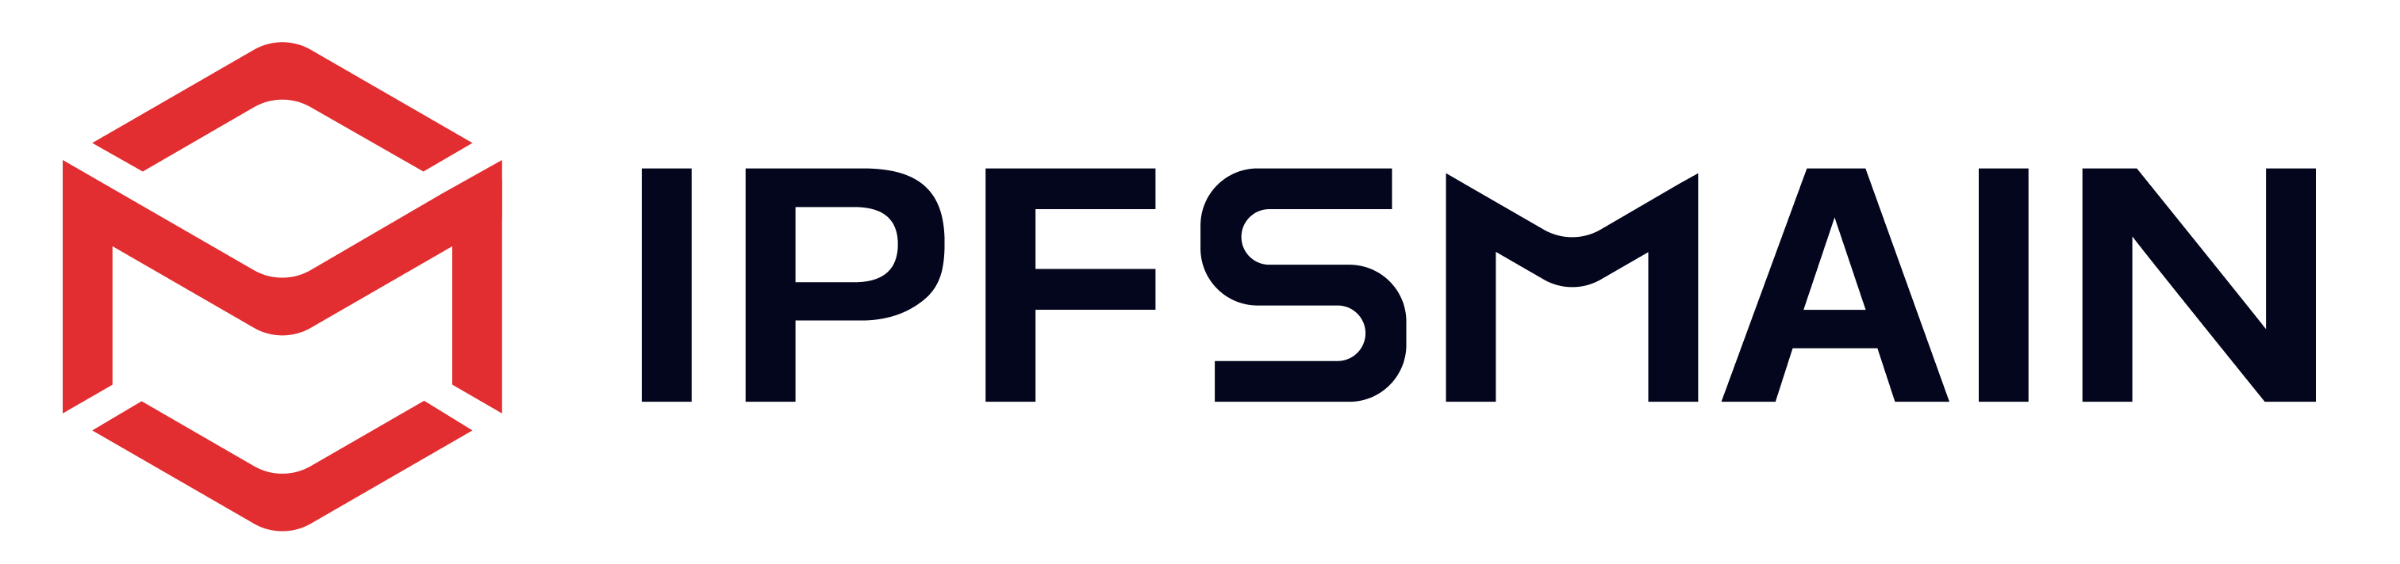 IPFS&Filecoin星际大陆荣获分布式存储行业最佳品牌奖